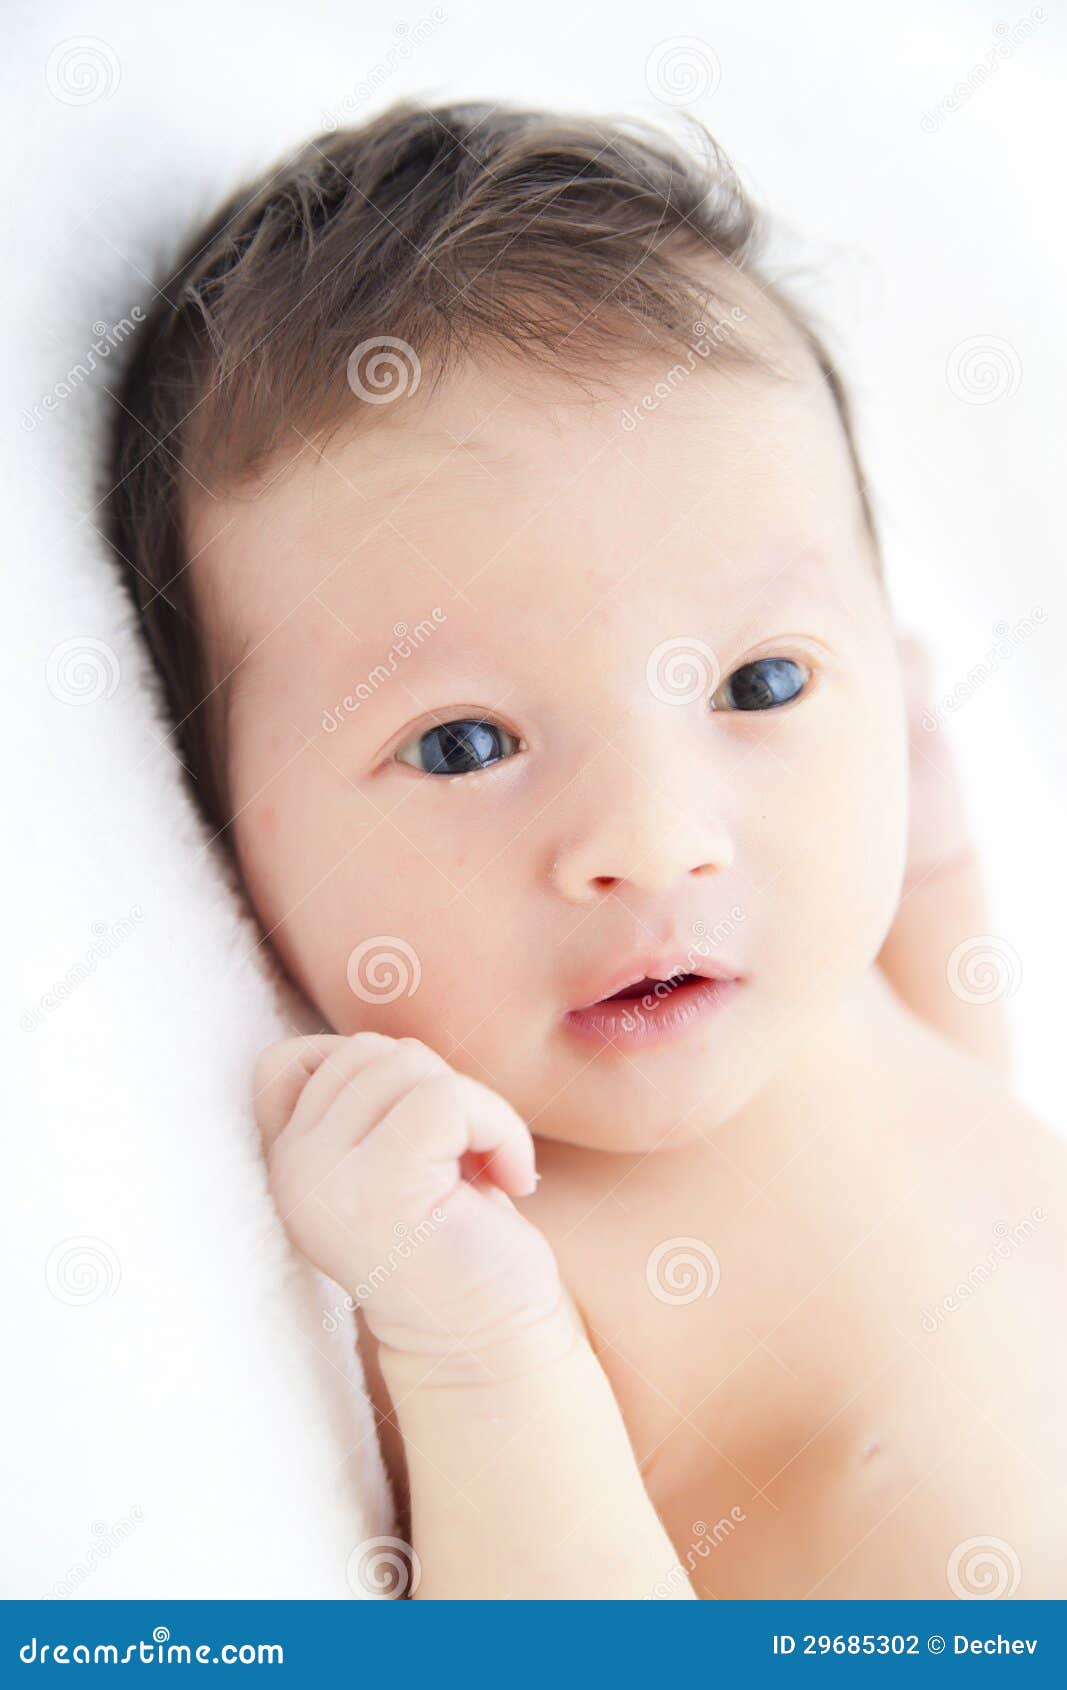 cute-newborn-baby-boy-29685302.jpg